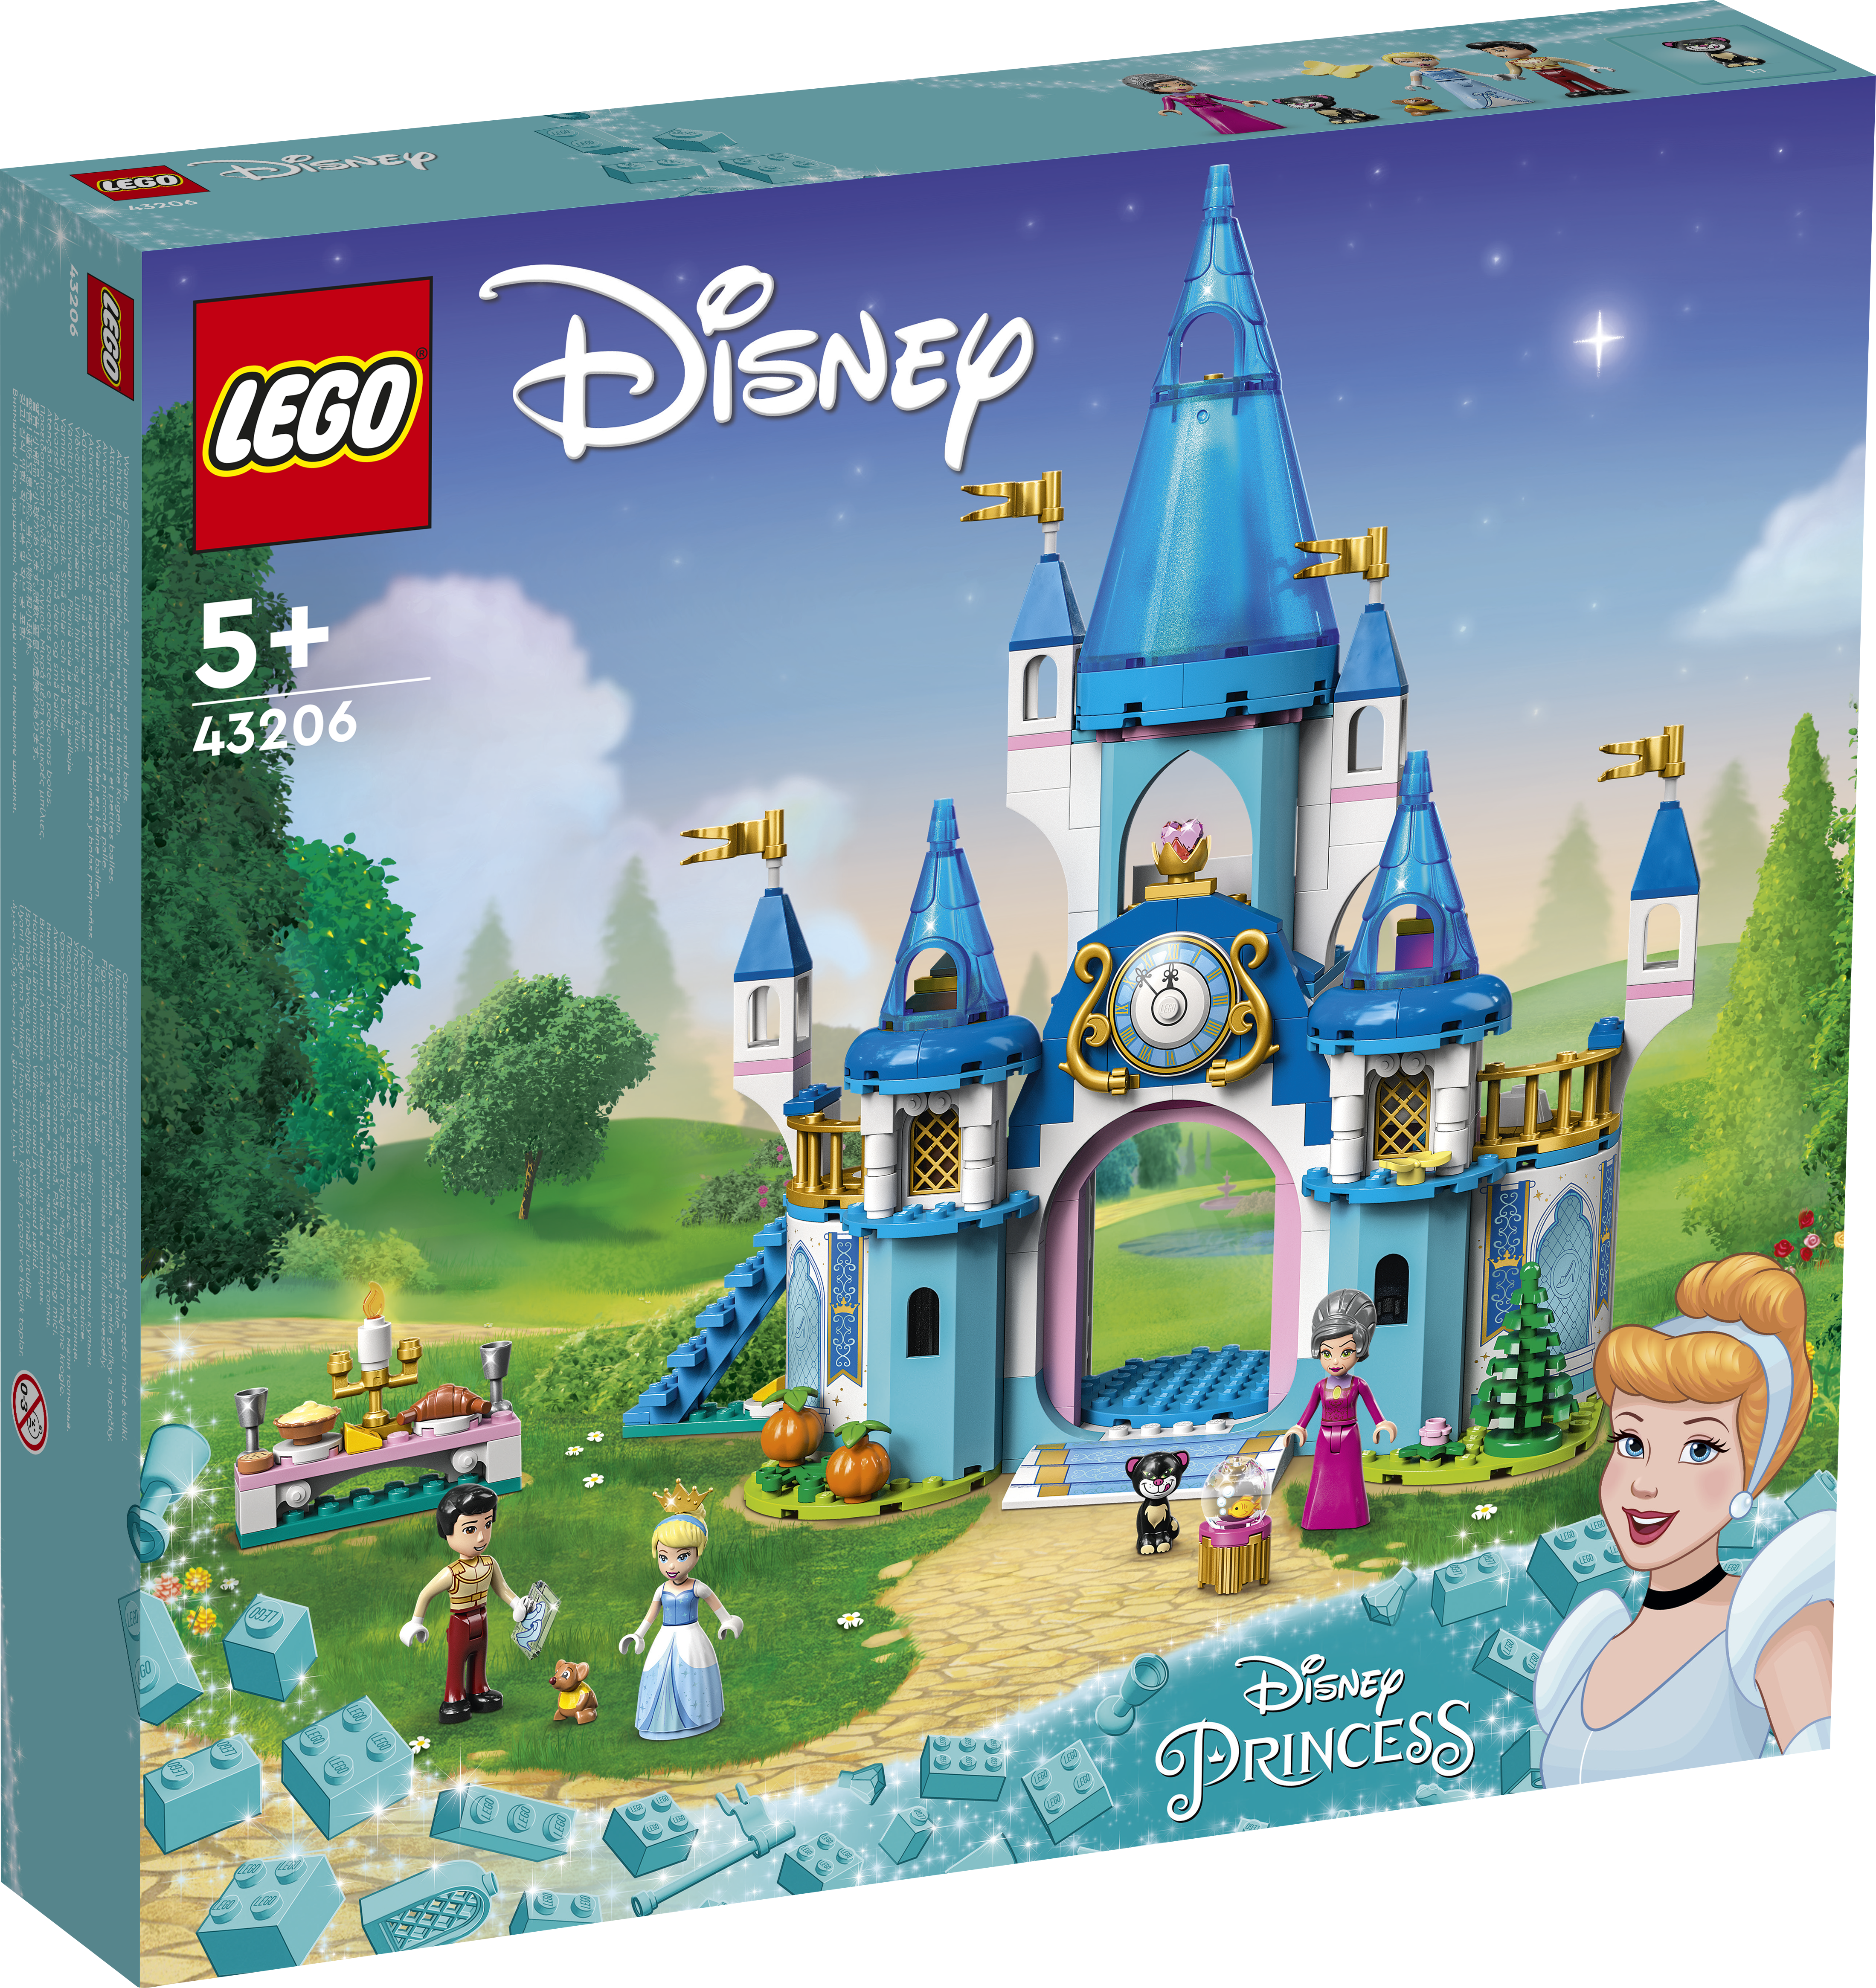 Lossiehitajad või Disney printsesside fännid leiavad rohkesti mänguvõimalusi komplektist LEGO Disney Tuhkatriinu ja hurmava printsi loss (43206)
The post LEGO D